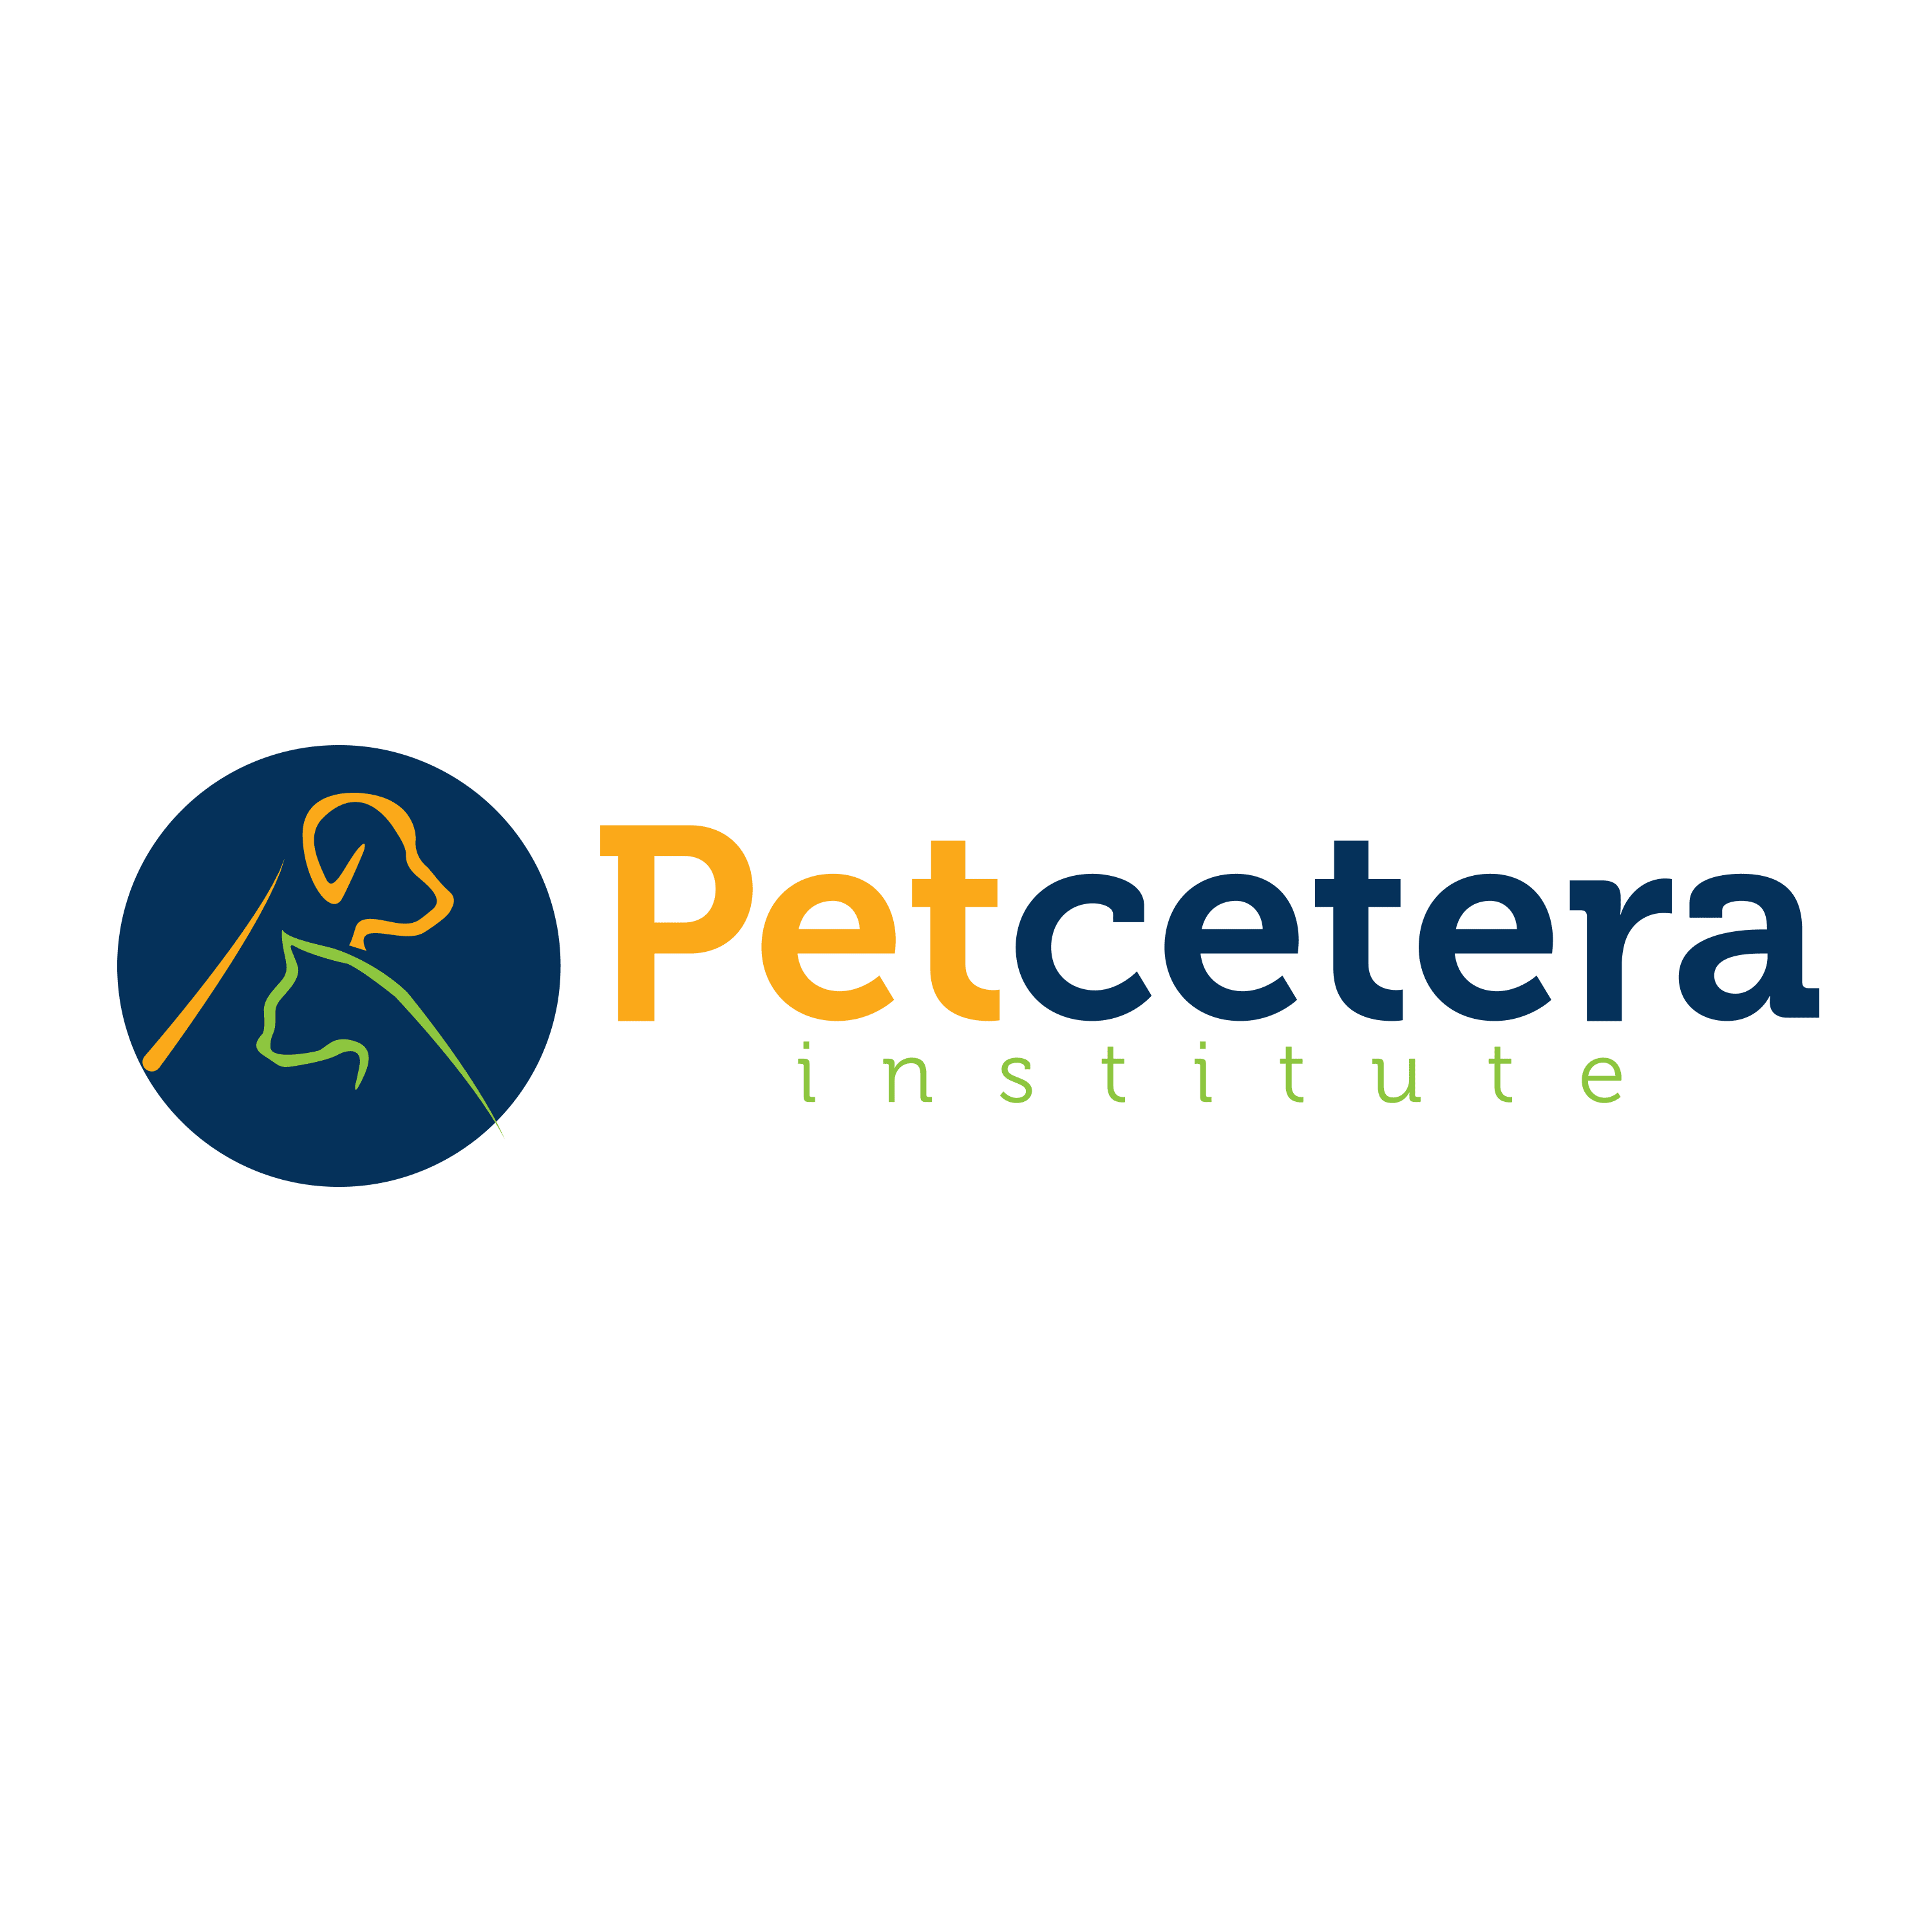 Petcetera Institute